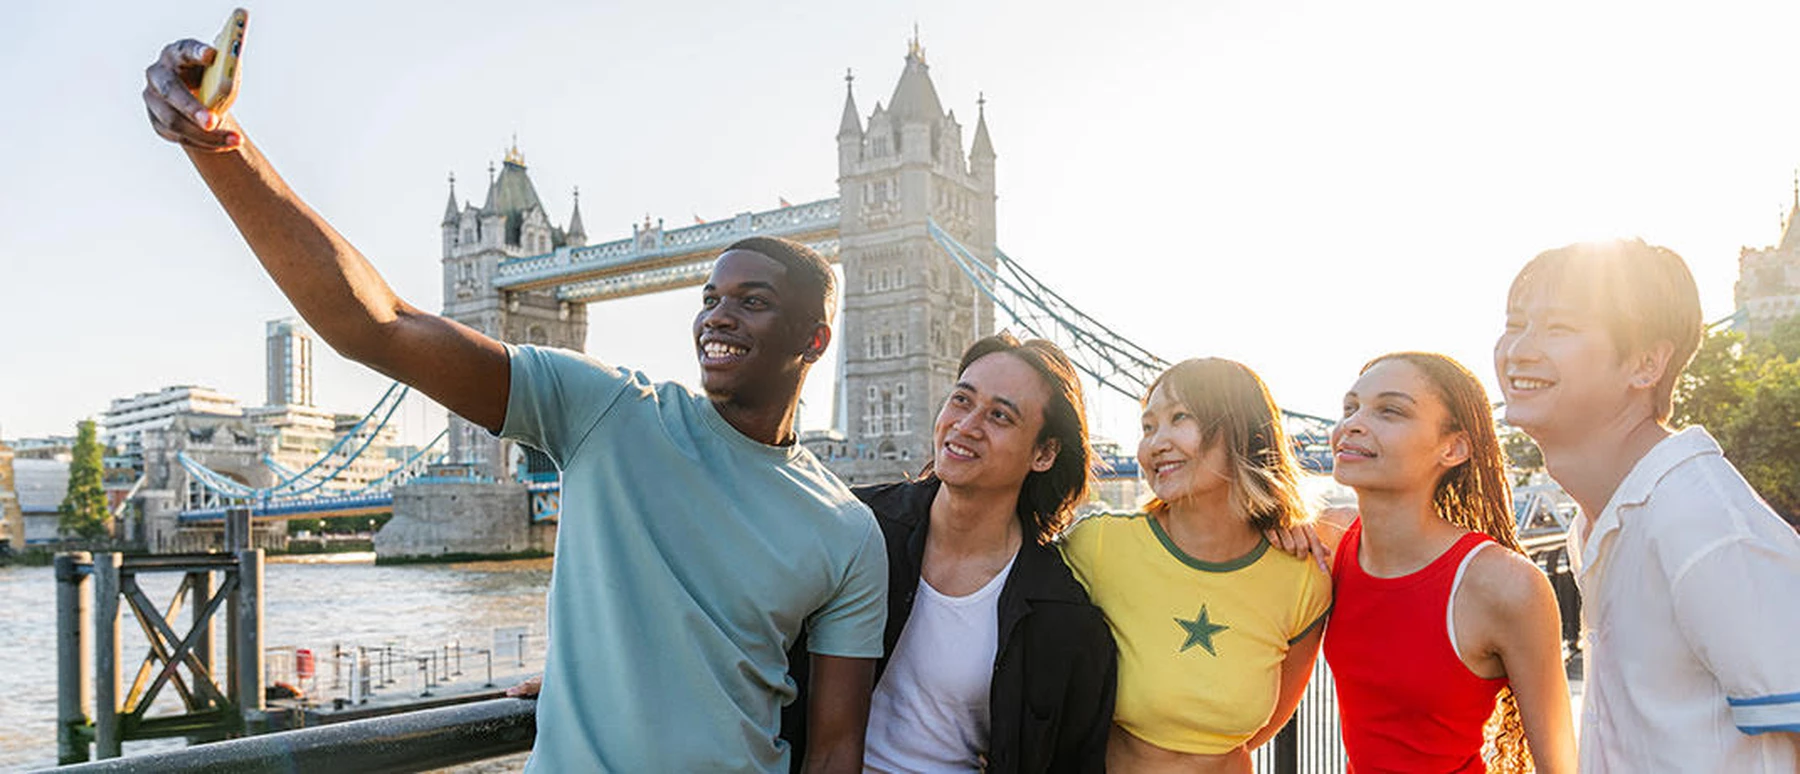 Vriendengroep maakt selfie in Londen